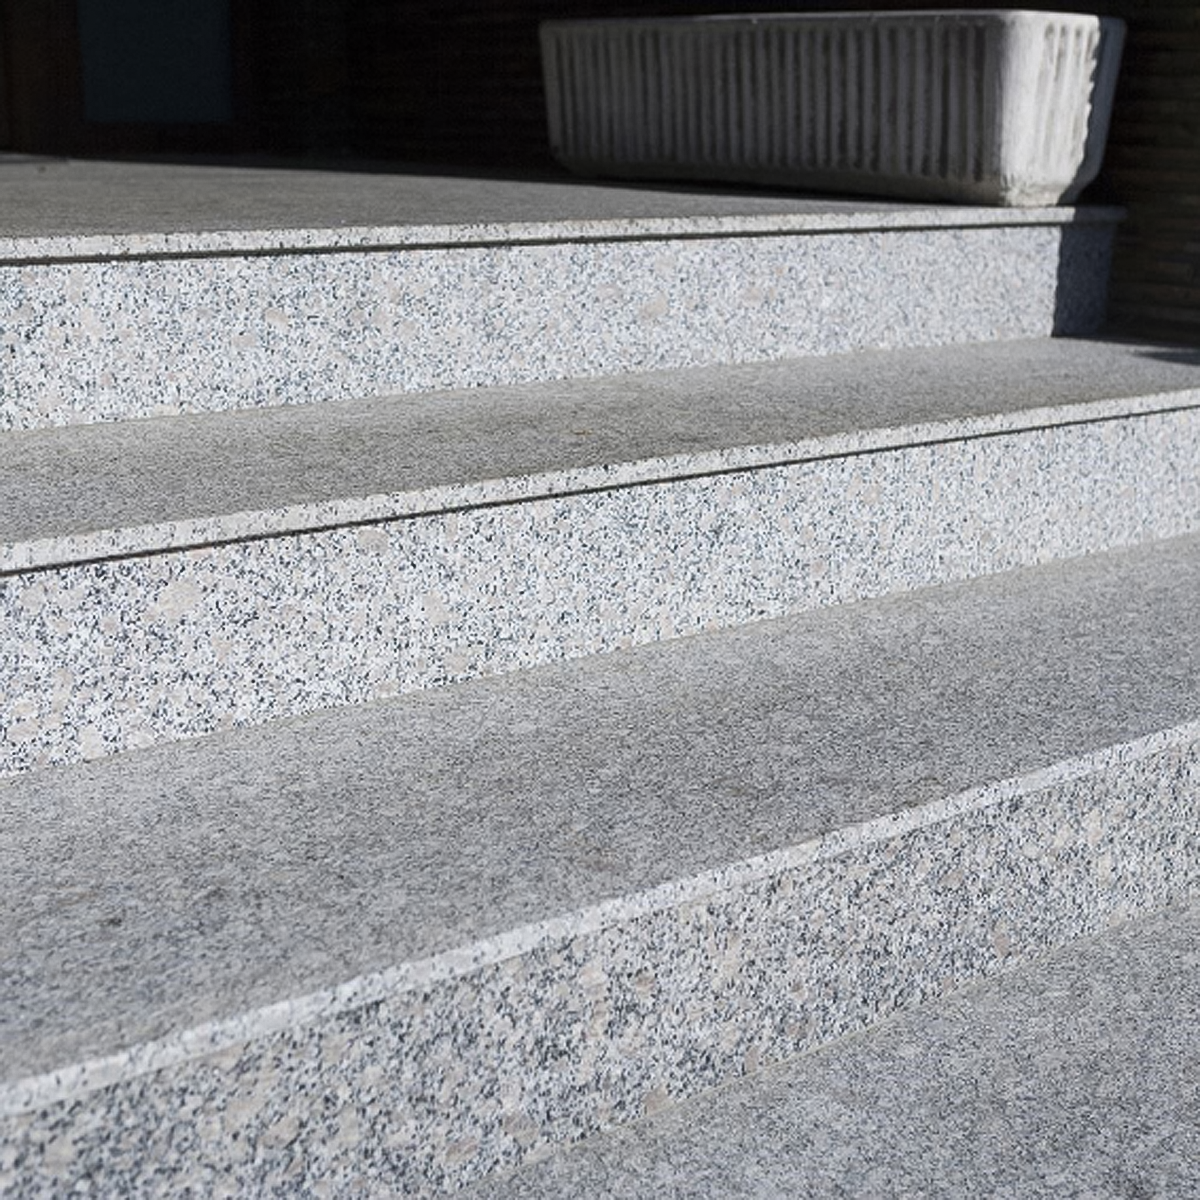 Trepte Granit Gri G602 Lustruit - 1 lungime bizotata 140 x 33 x 2 cm